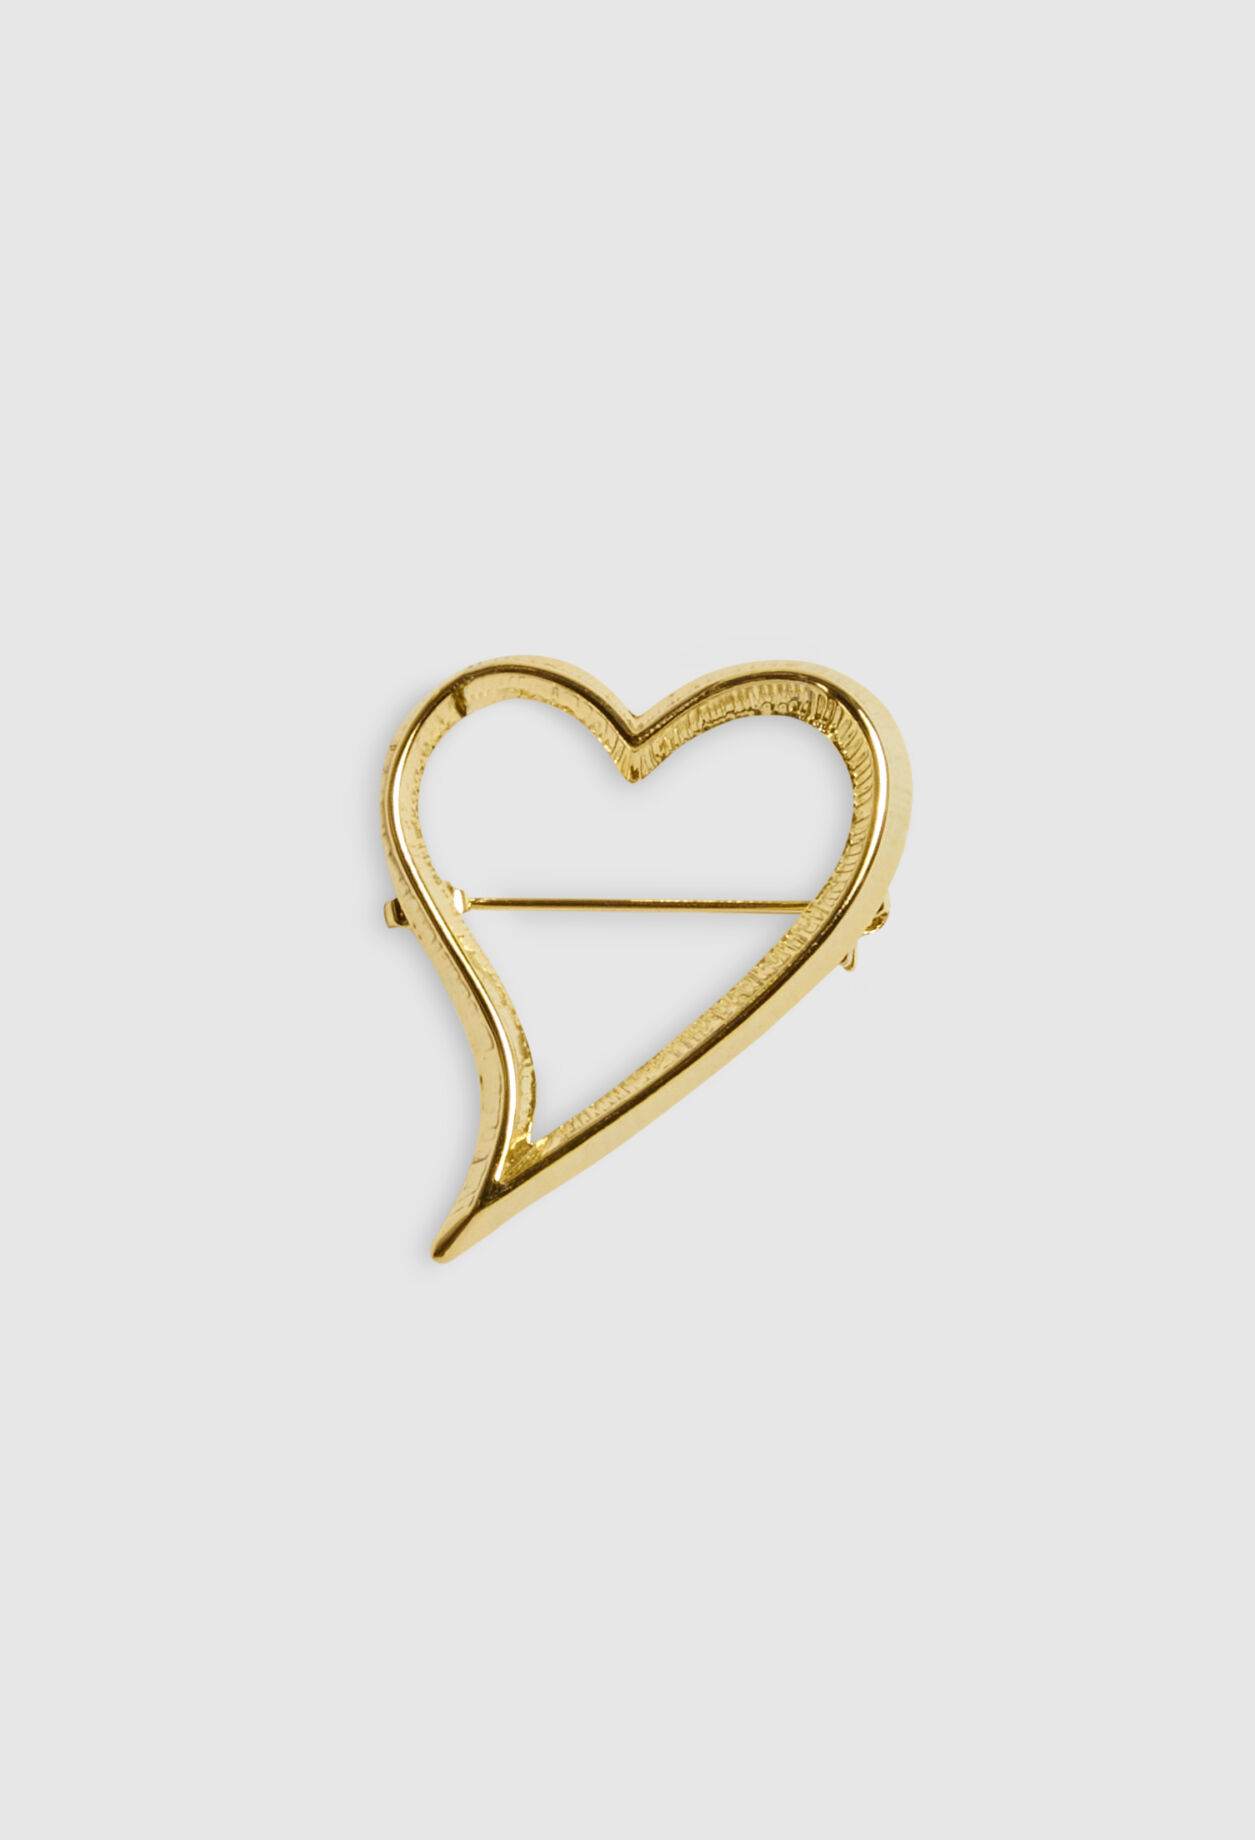 Gold heart brooch